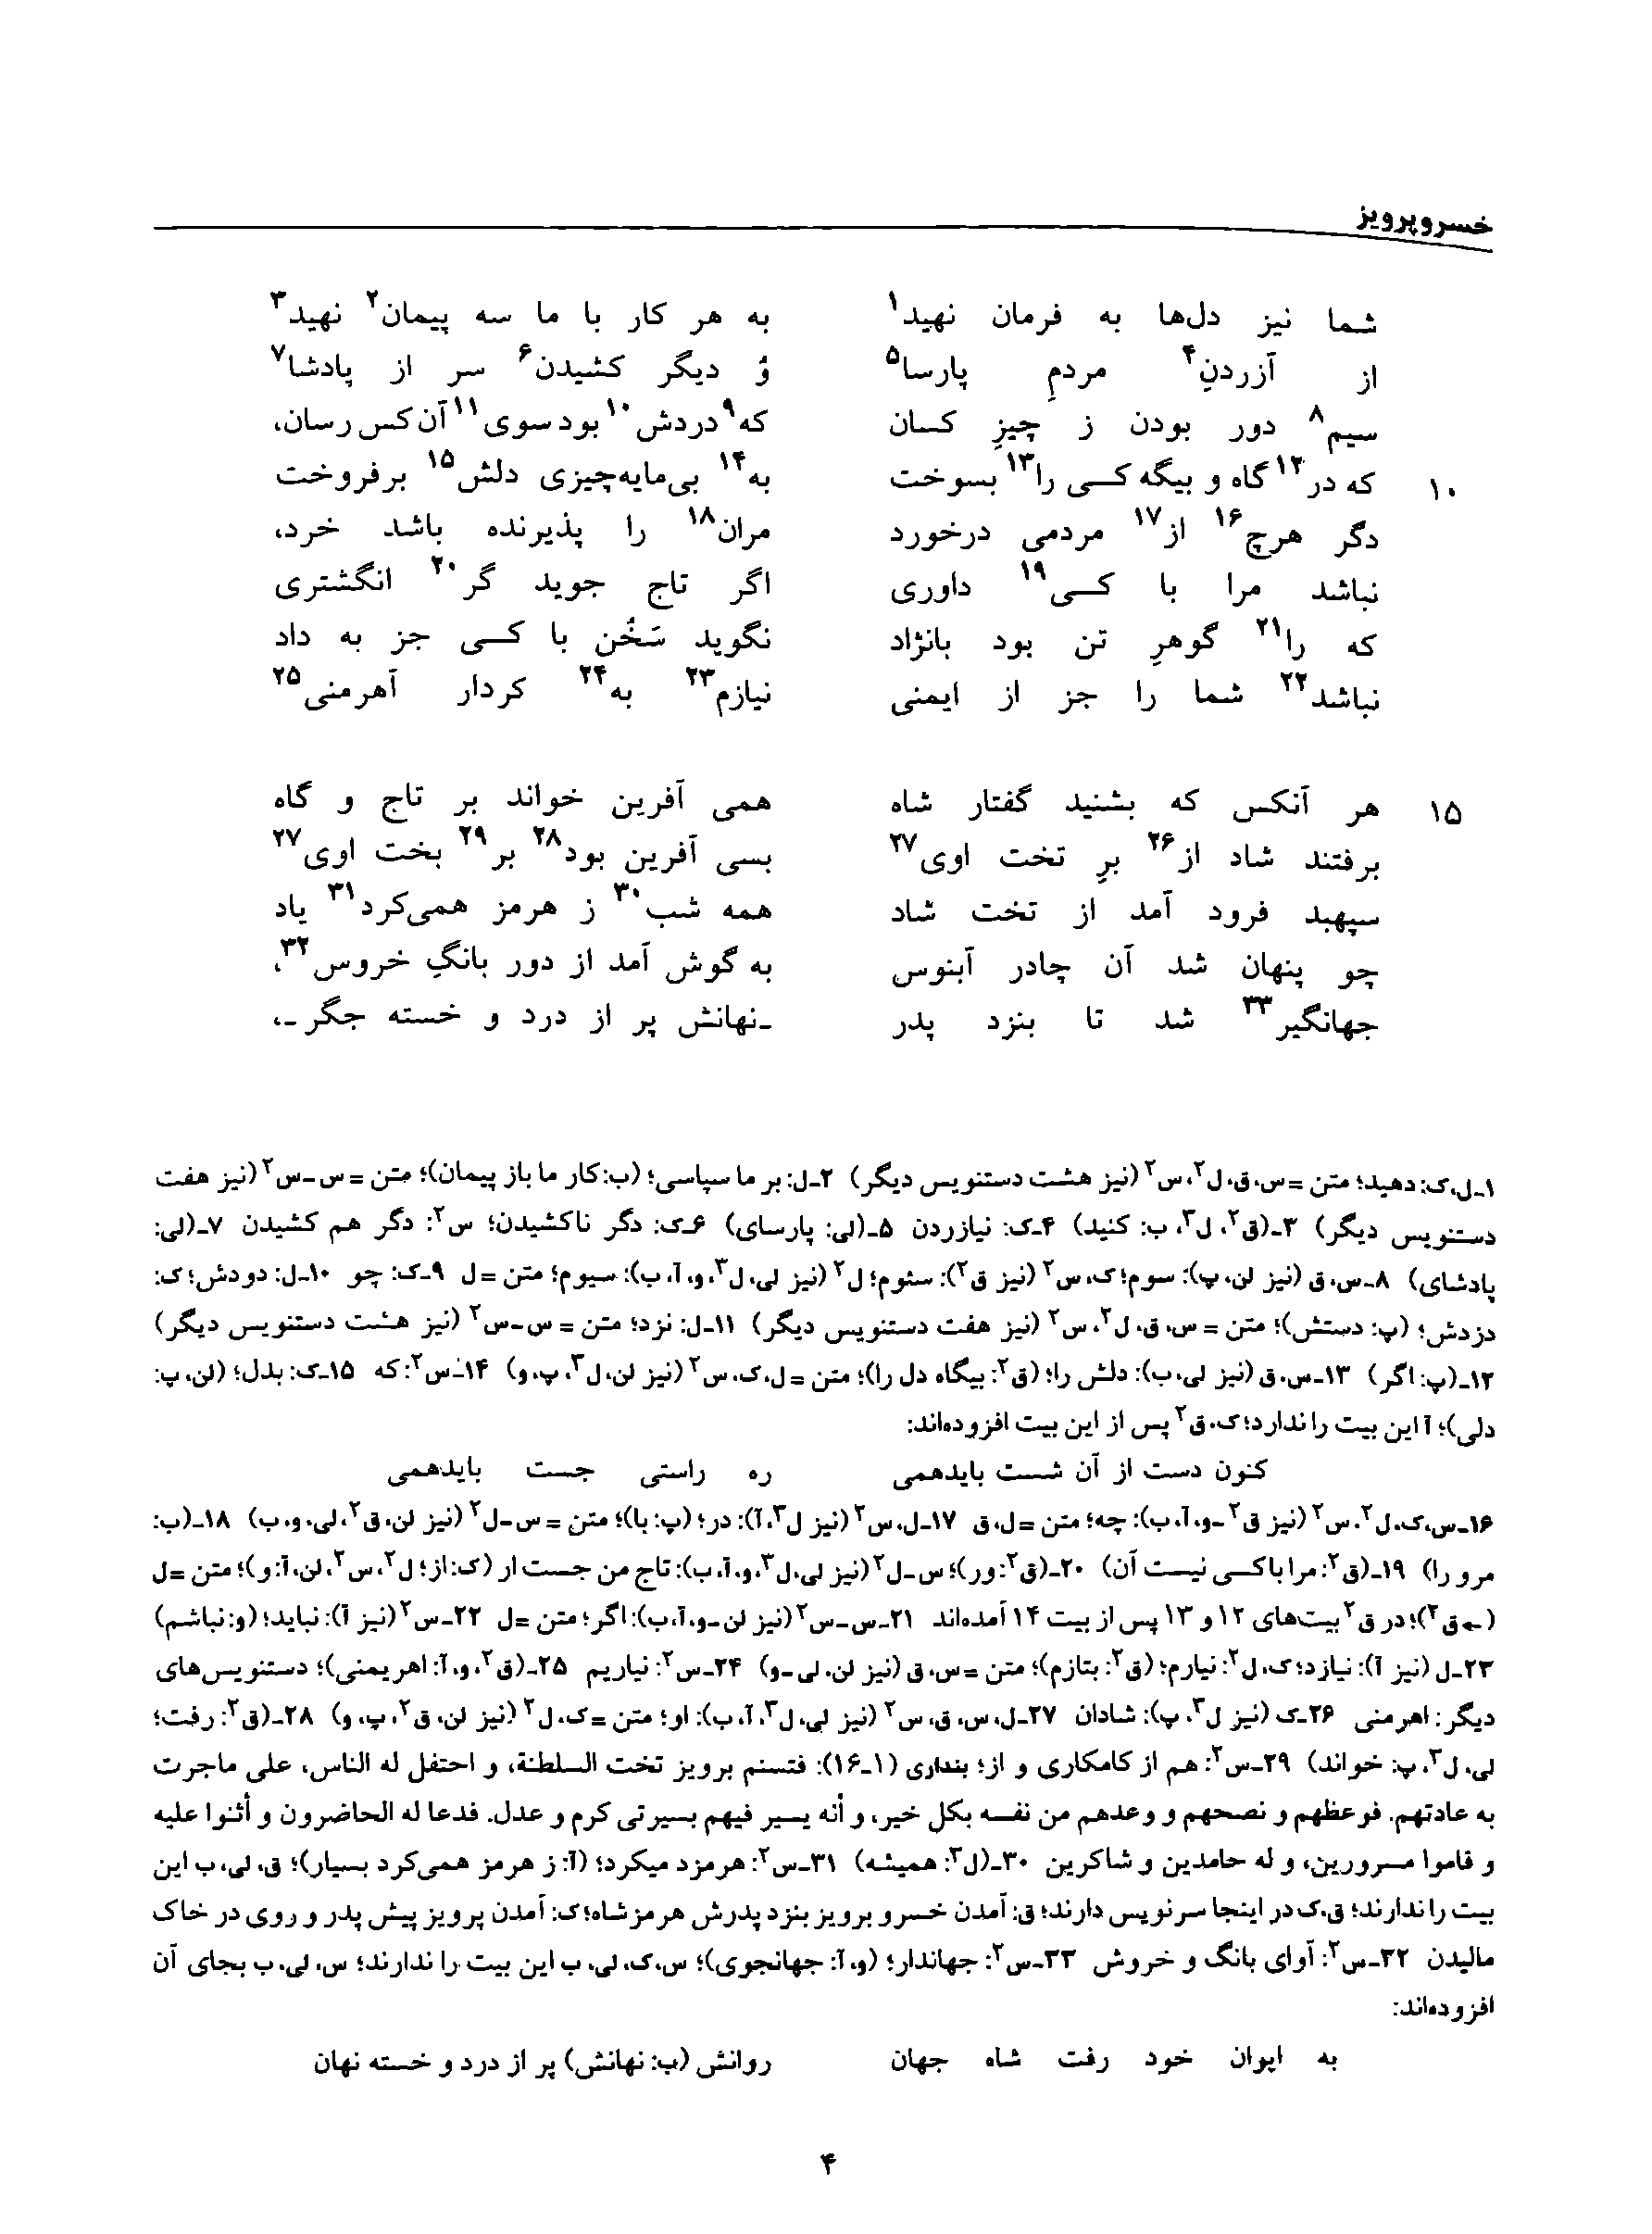 vol. 8, p. 4